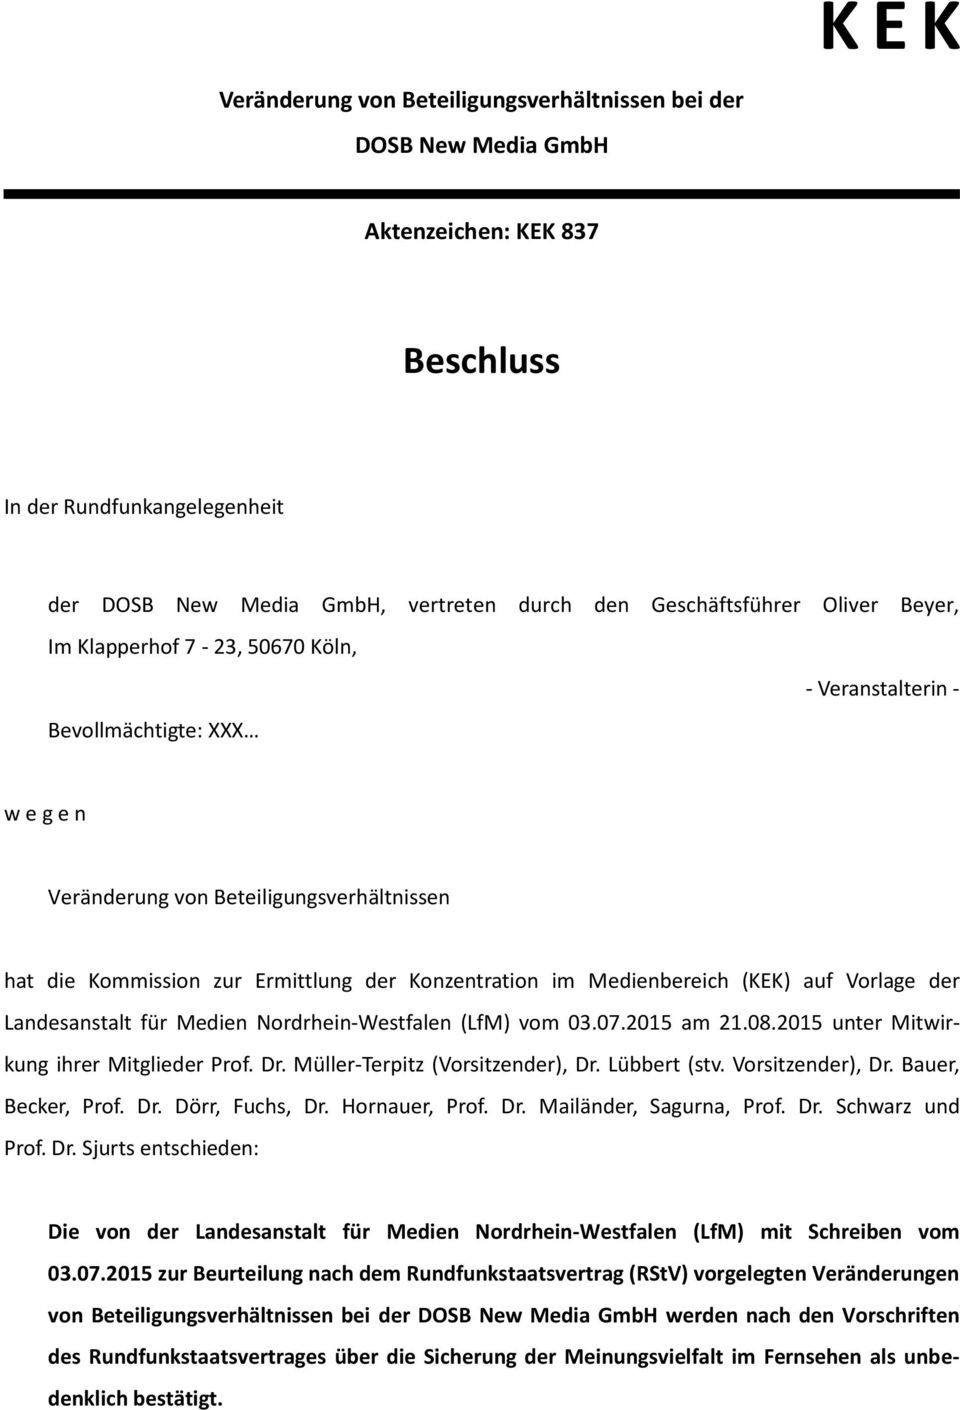 Medienbereich (KEK) auf Vorlage der Landesanstalt für Medien Nordrhein-Westfalen (LfM) vom 03.07.2015 am 21.08.2015 unter Mitwirkung ihrer Mitglieder Prof. Dr. Müller-Terpitz (Vorsitzender), Dr.